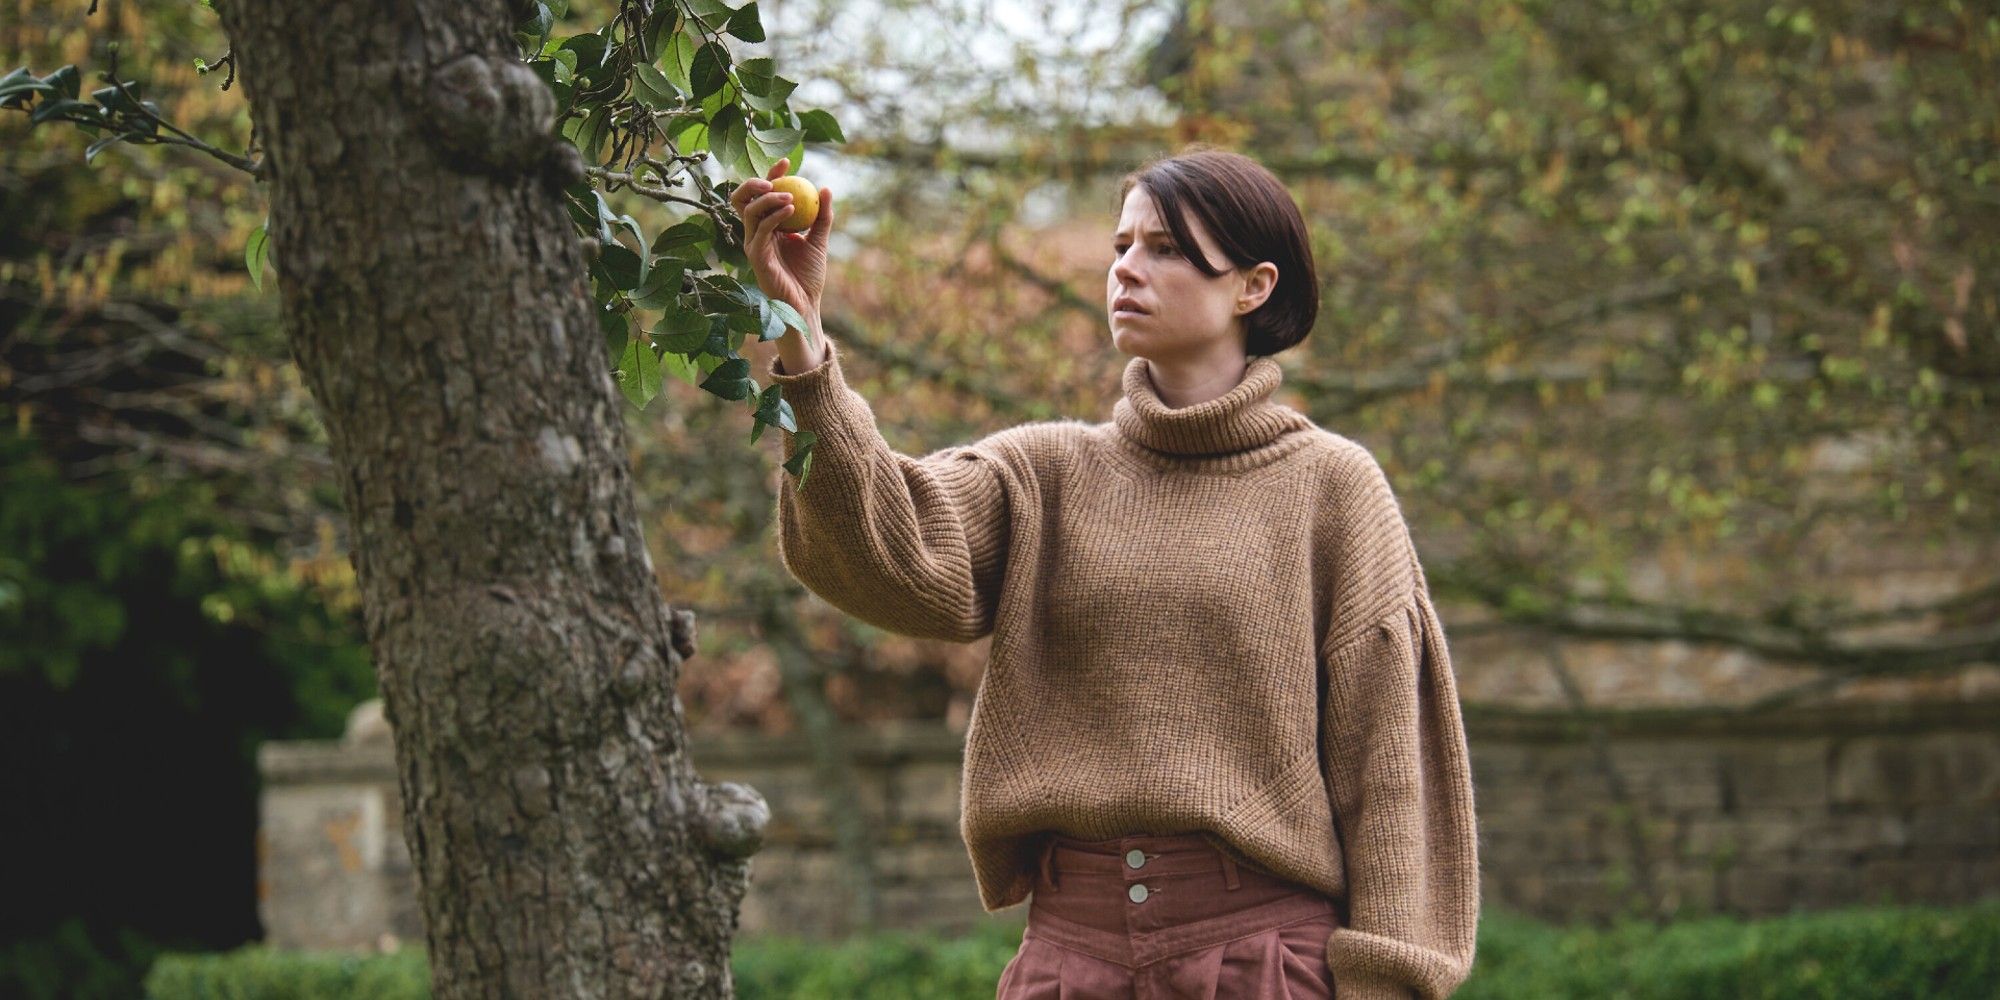 Jessie Buckley as Harper in Men plucks an apple from a tree.